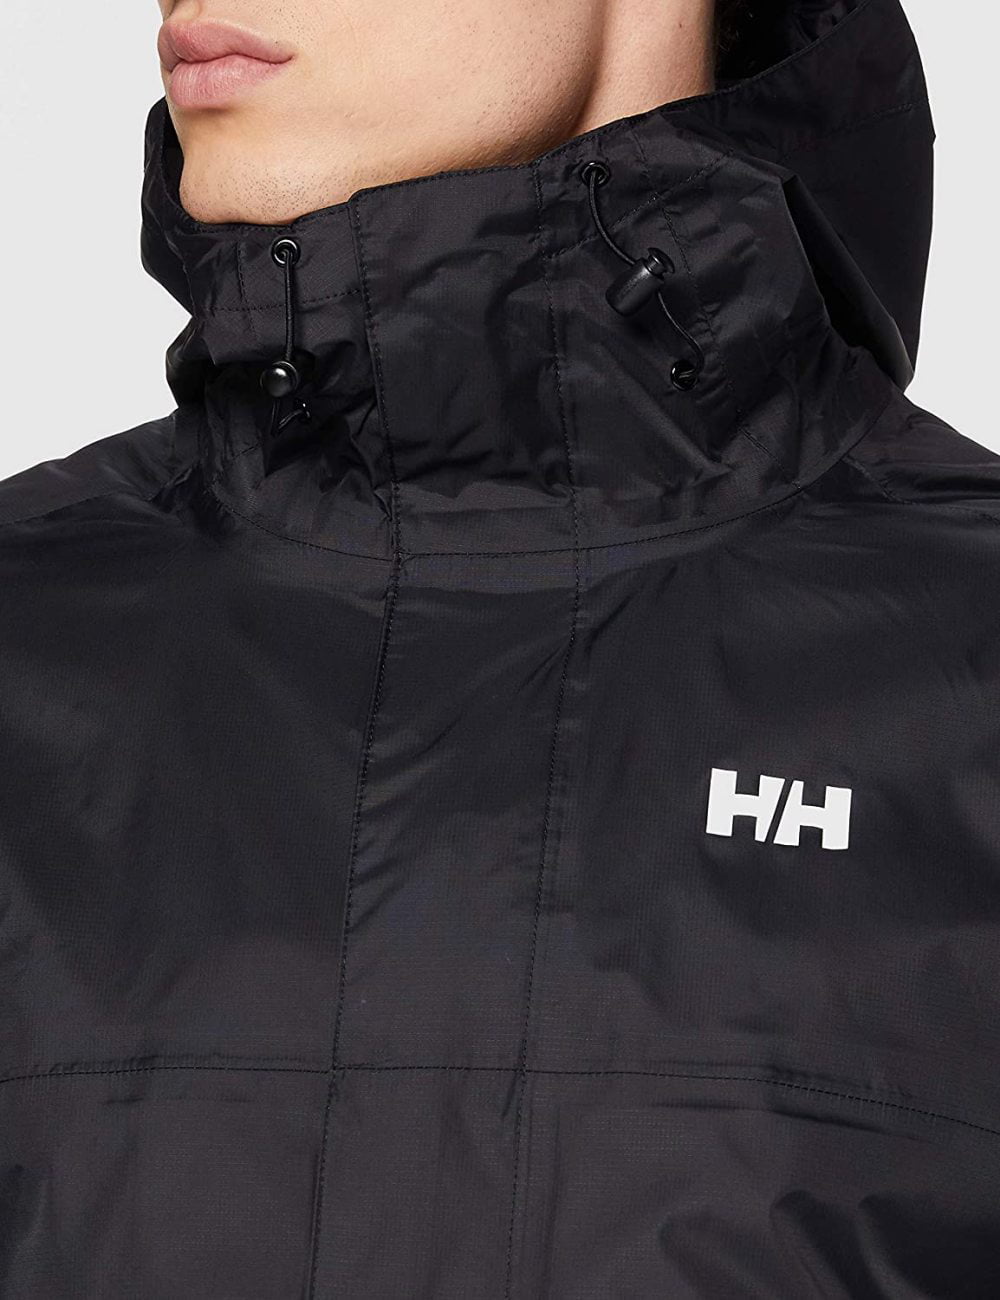 Helly Hansen Loke Lightweight Hooded Waterproof Windproof Breathable Rain Coat Jacket